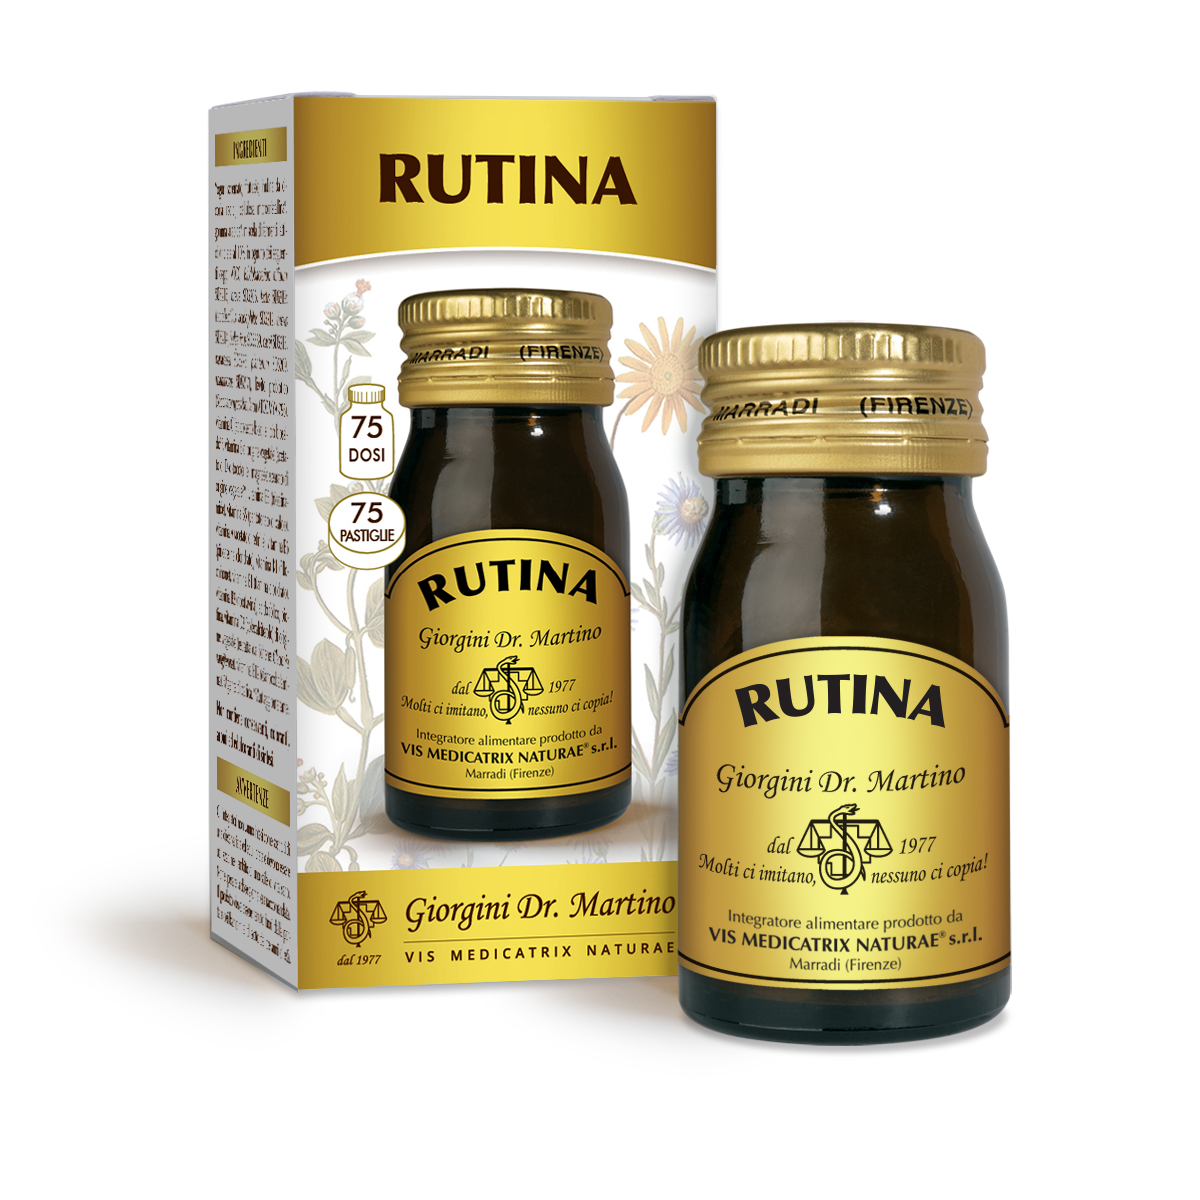 RUTINA 30 g - 75 pastiglie da400 mg